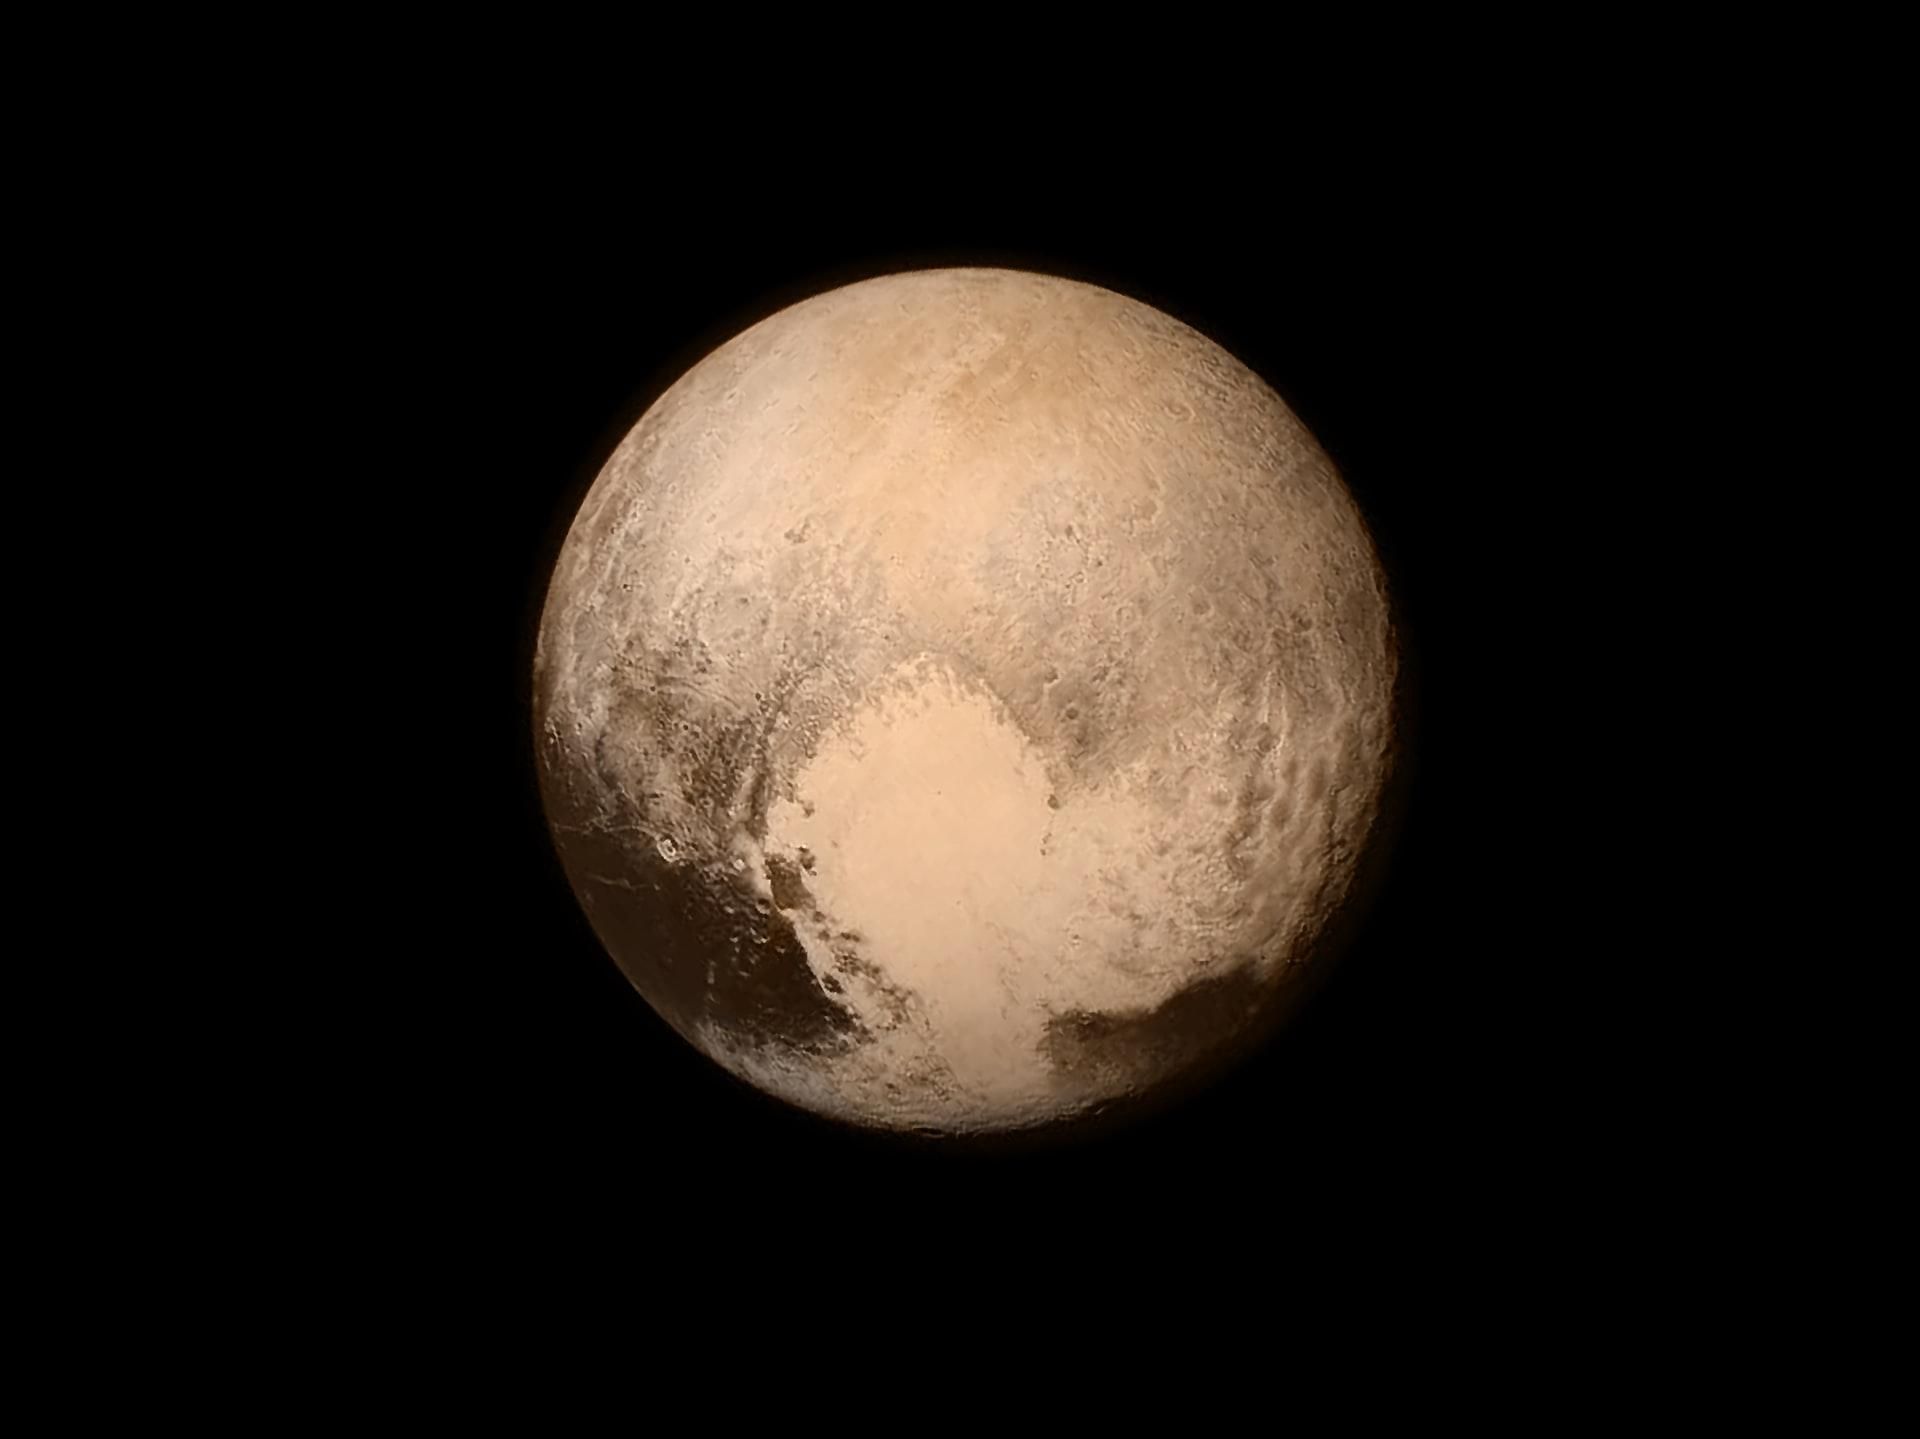 Група астрономів хоче повернути Плутону статус планети: які їхні аргументи - Новини технологій - Техно